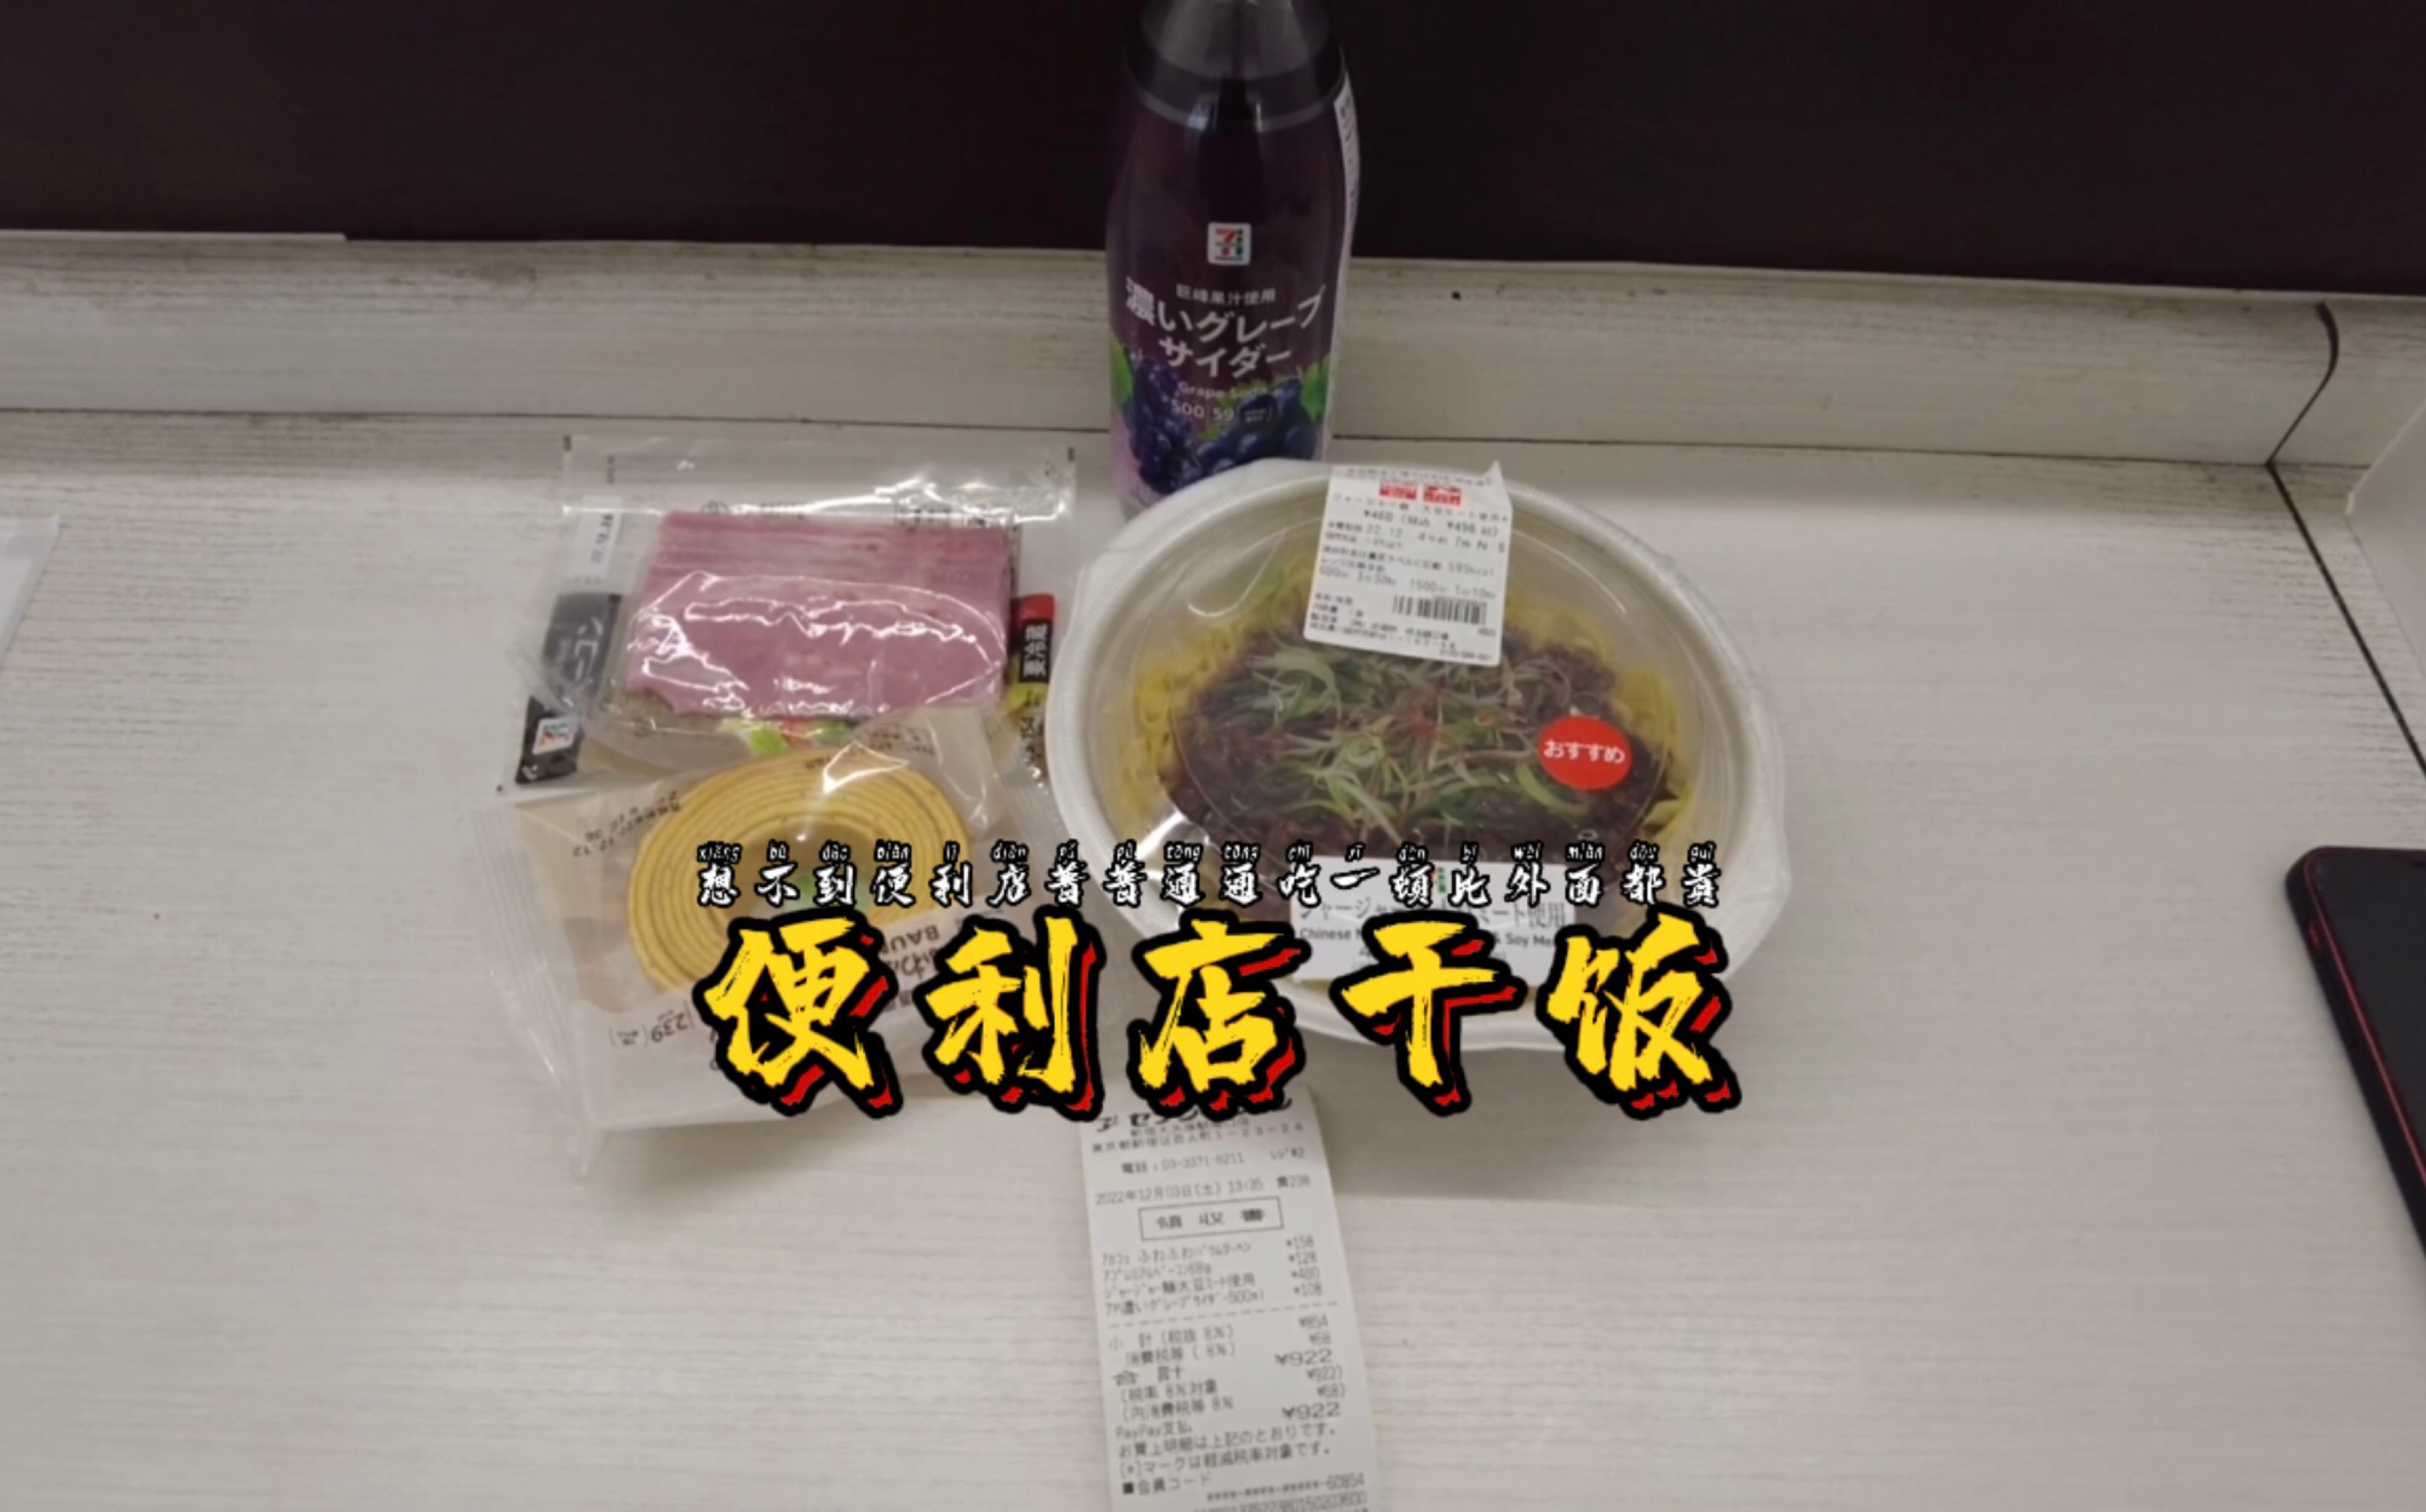 日本便利店吃午饭不仅贵而且还吃不饱